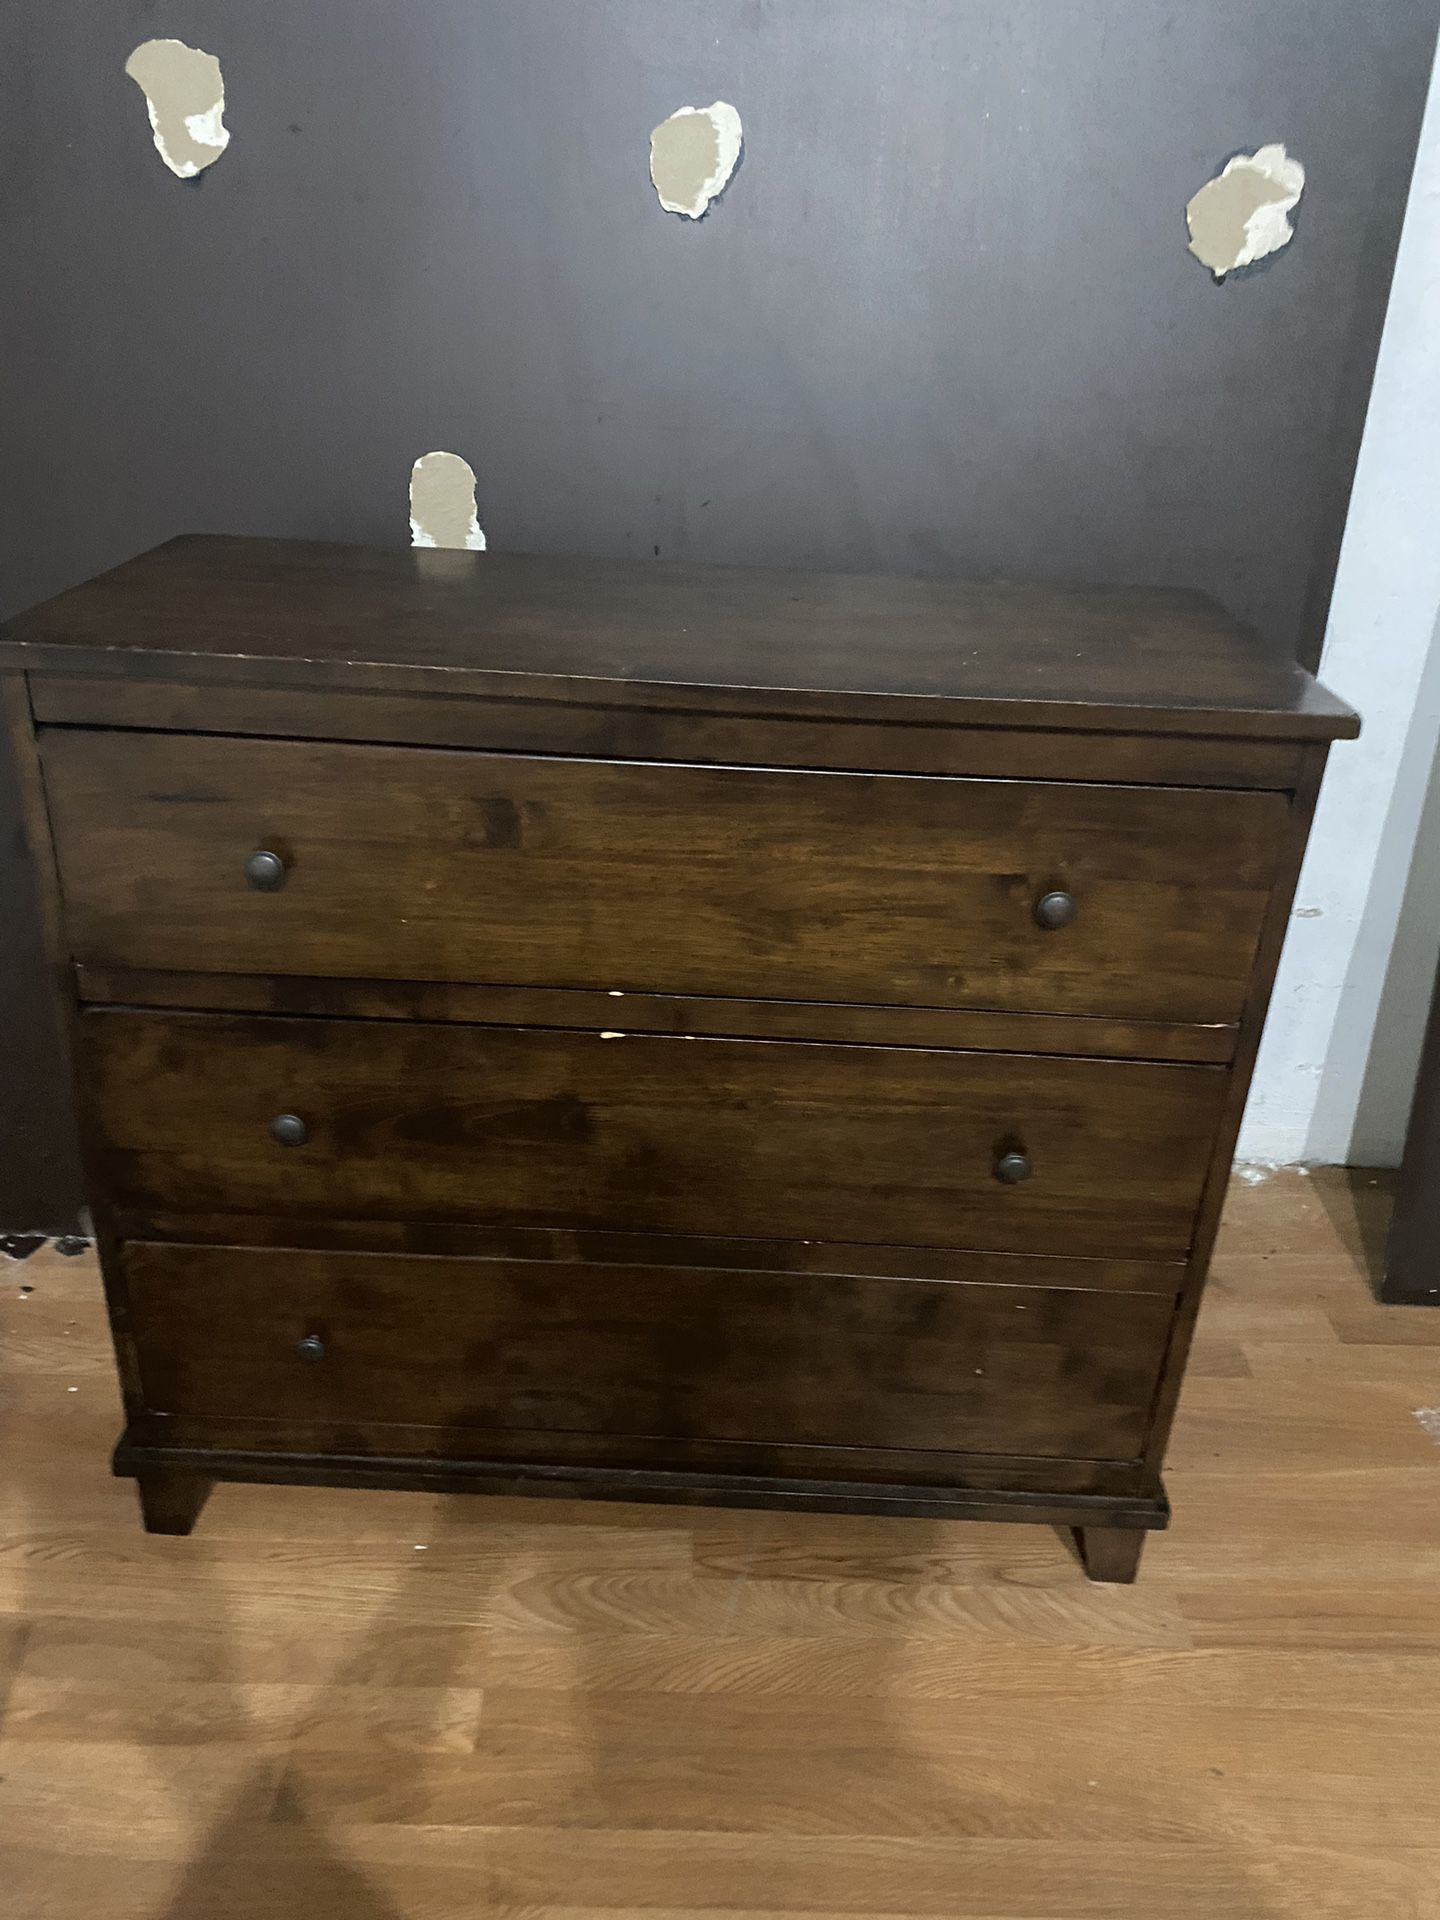 Solid Wood Dresser $20